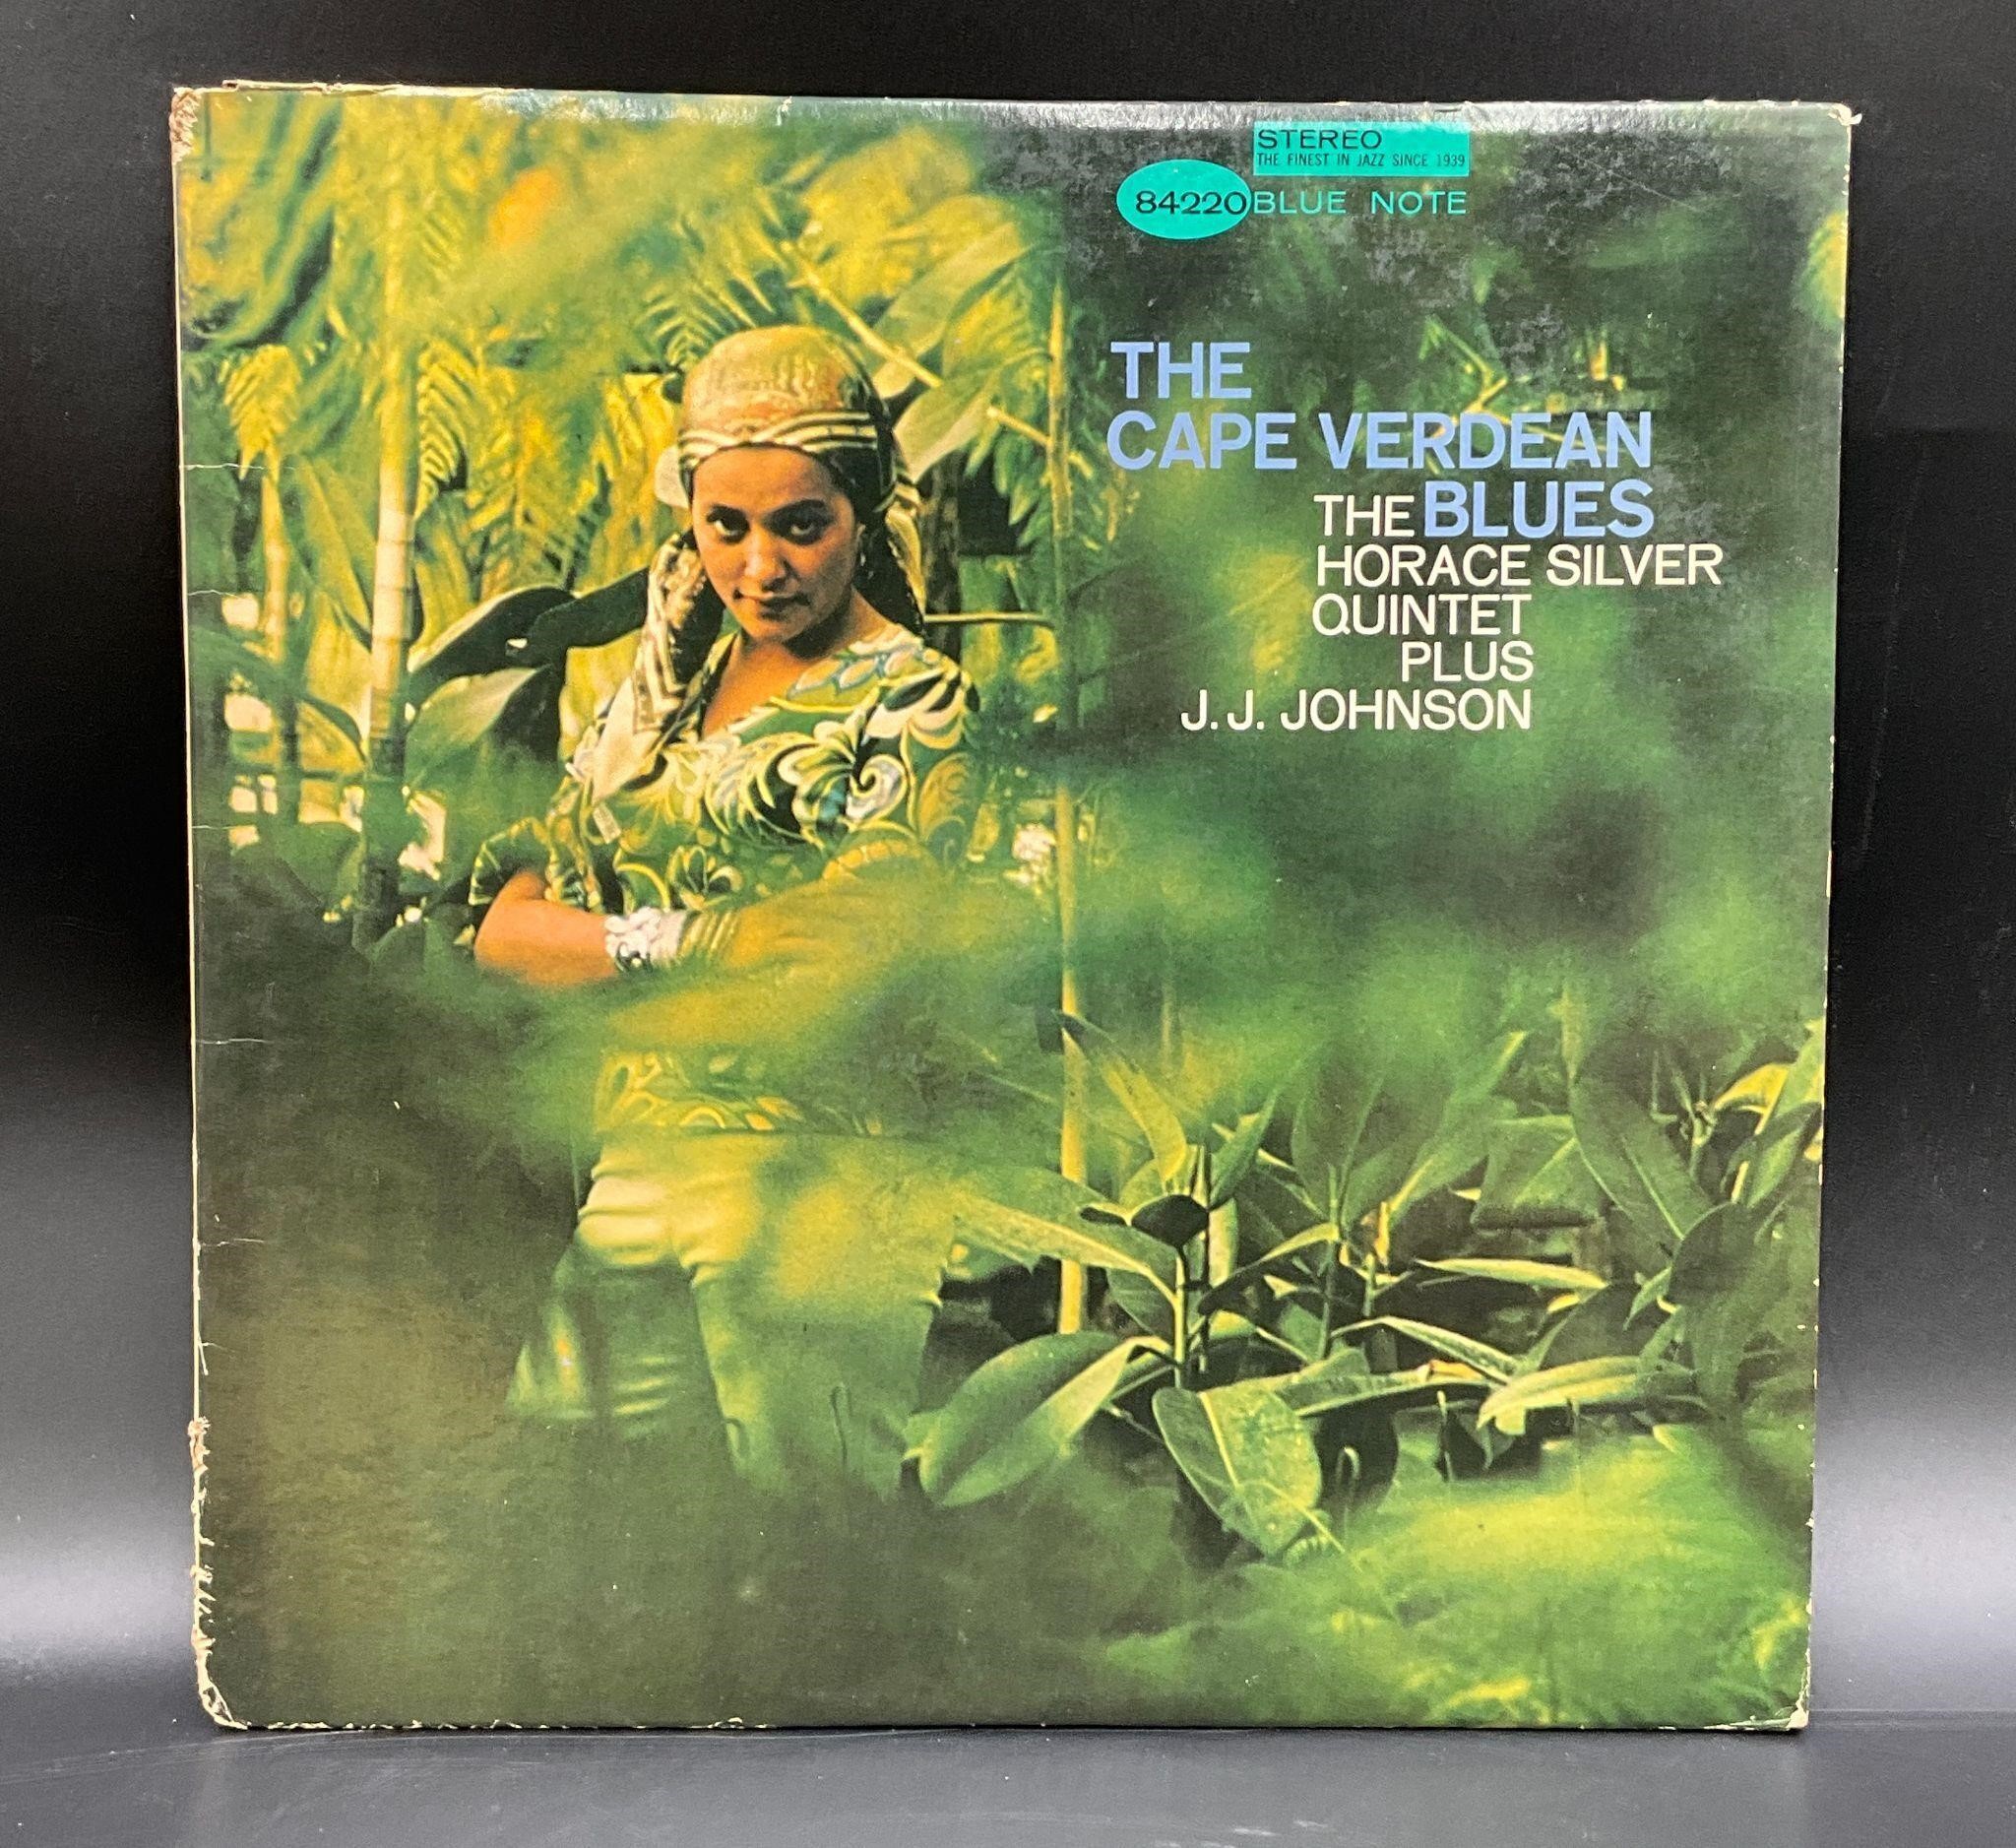 1956 Horace Silver Quintet "Cape Verdean Blues"